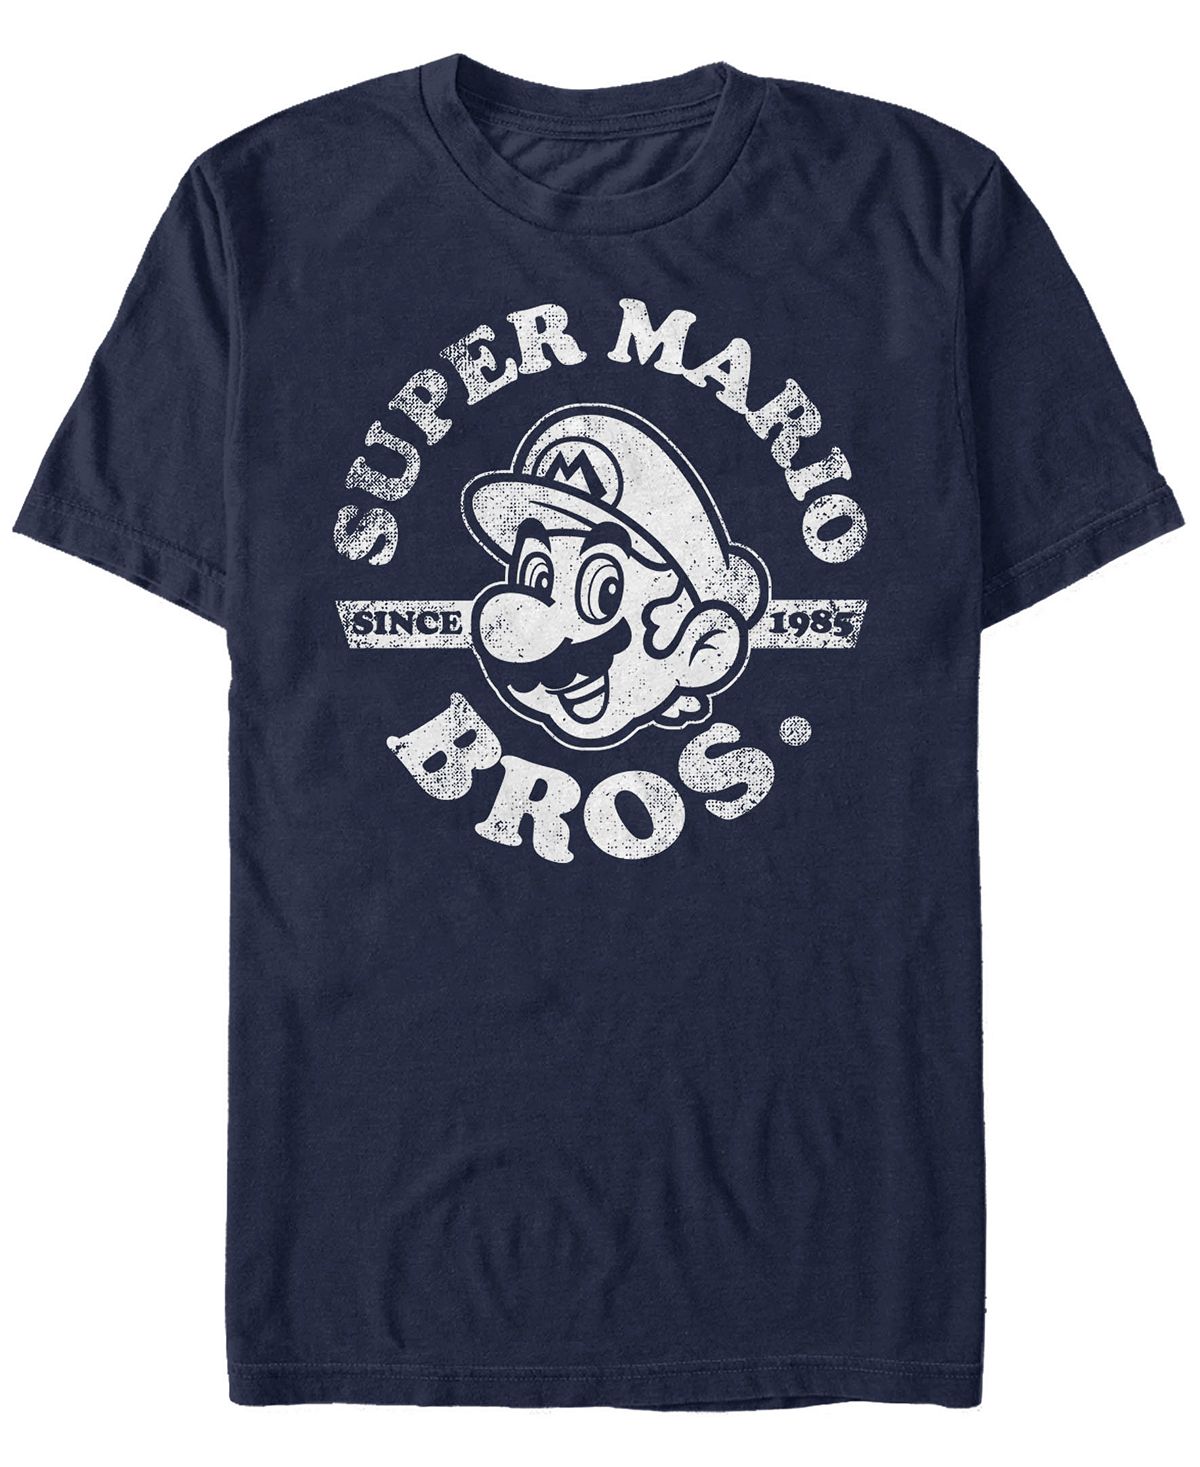 Мужская футболка nintendo super mario bros. с 1985 года с коротким рукавом Fifth Sun, синий рюкзак луиджи и йоши mario желтый 3